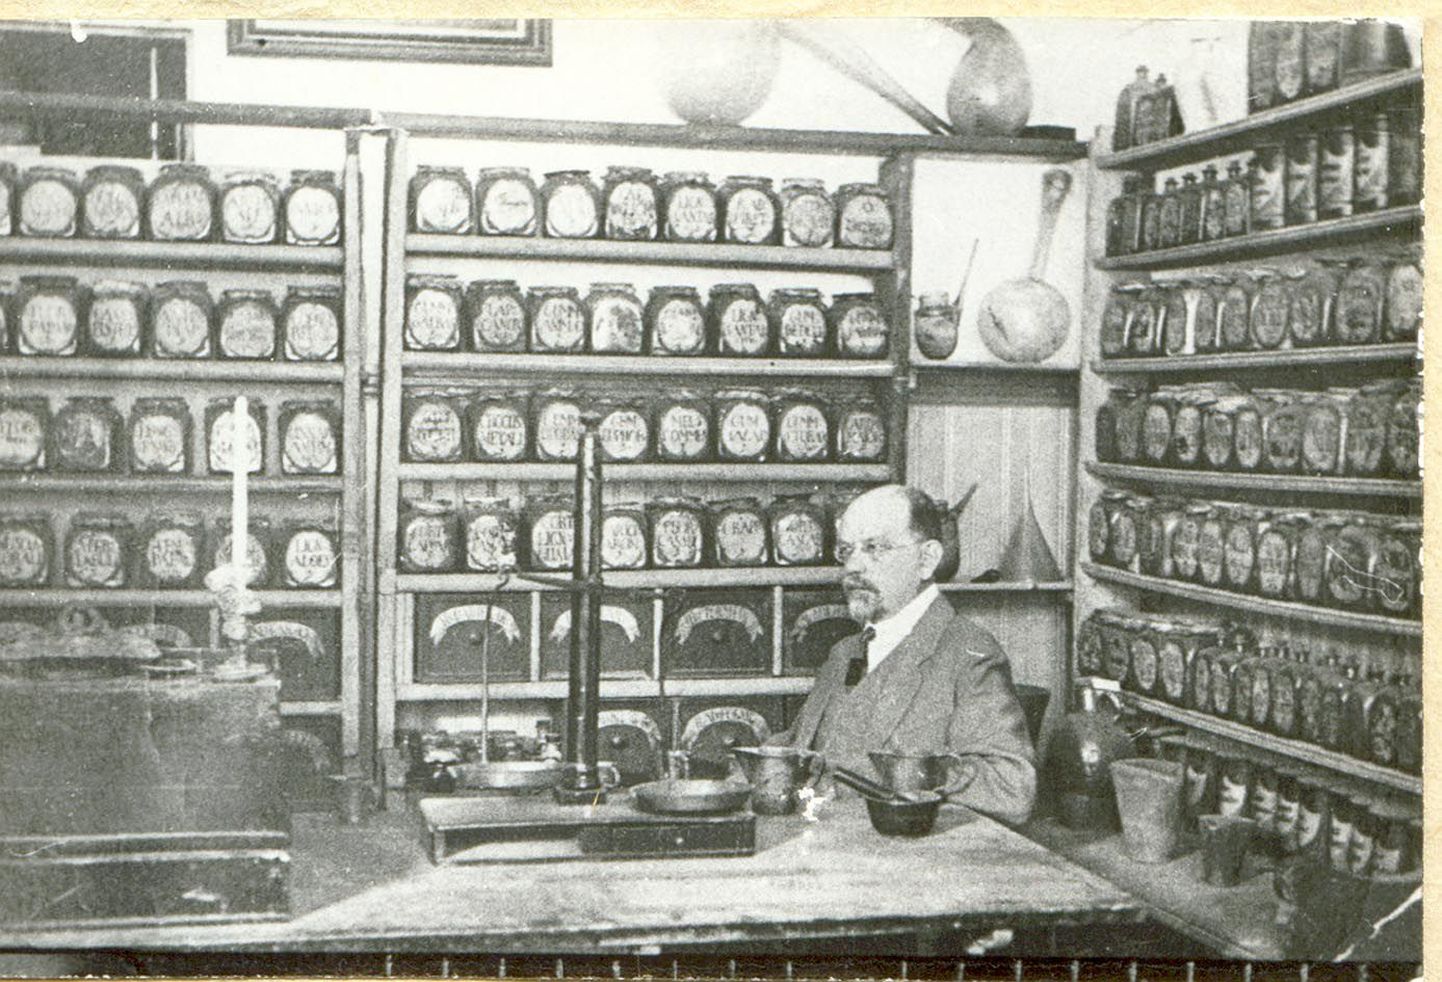 Järvamaa Muinasasjade Alalhoidmise Seltsi üks asutajaid, apteeker ja Paide linnapea Oskar Brasche annetas 1912. aastal Järvamaa muuseumile siiani väärtuslikema kogu – üle 200 eseme tema perekonnale kulunud vana apteegi sisustusest.